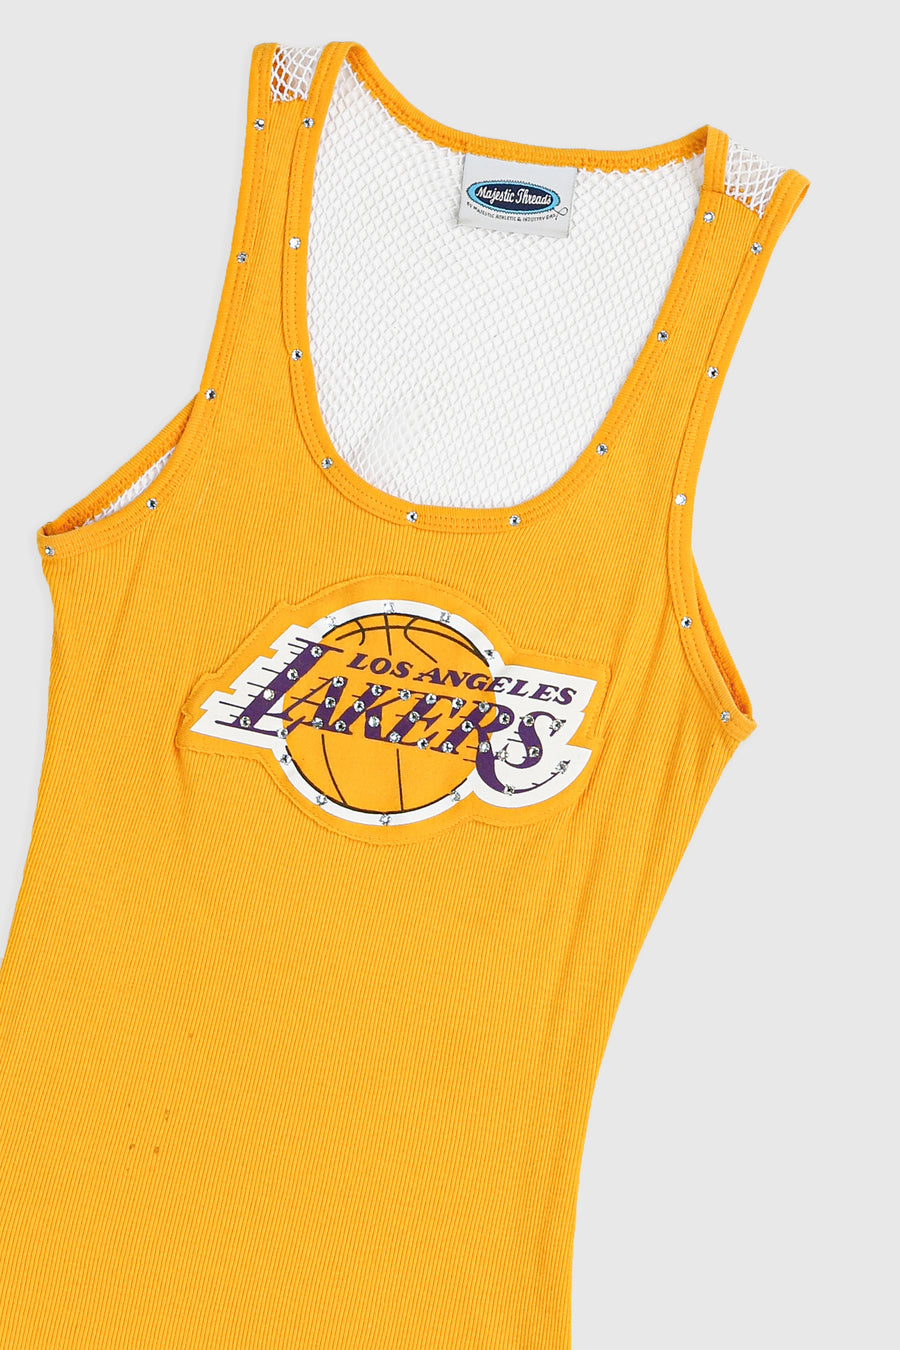 Vintage LA Lakers Tank - S